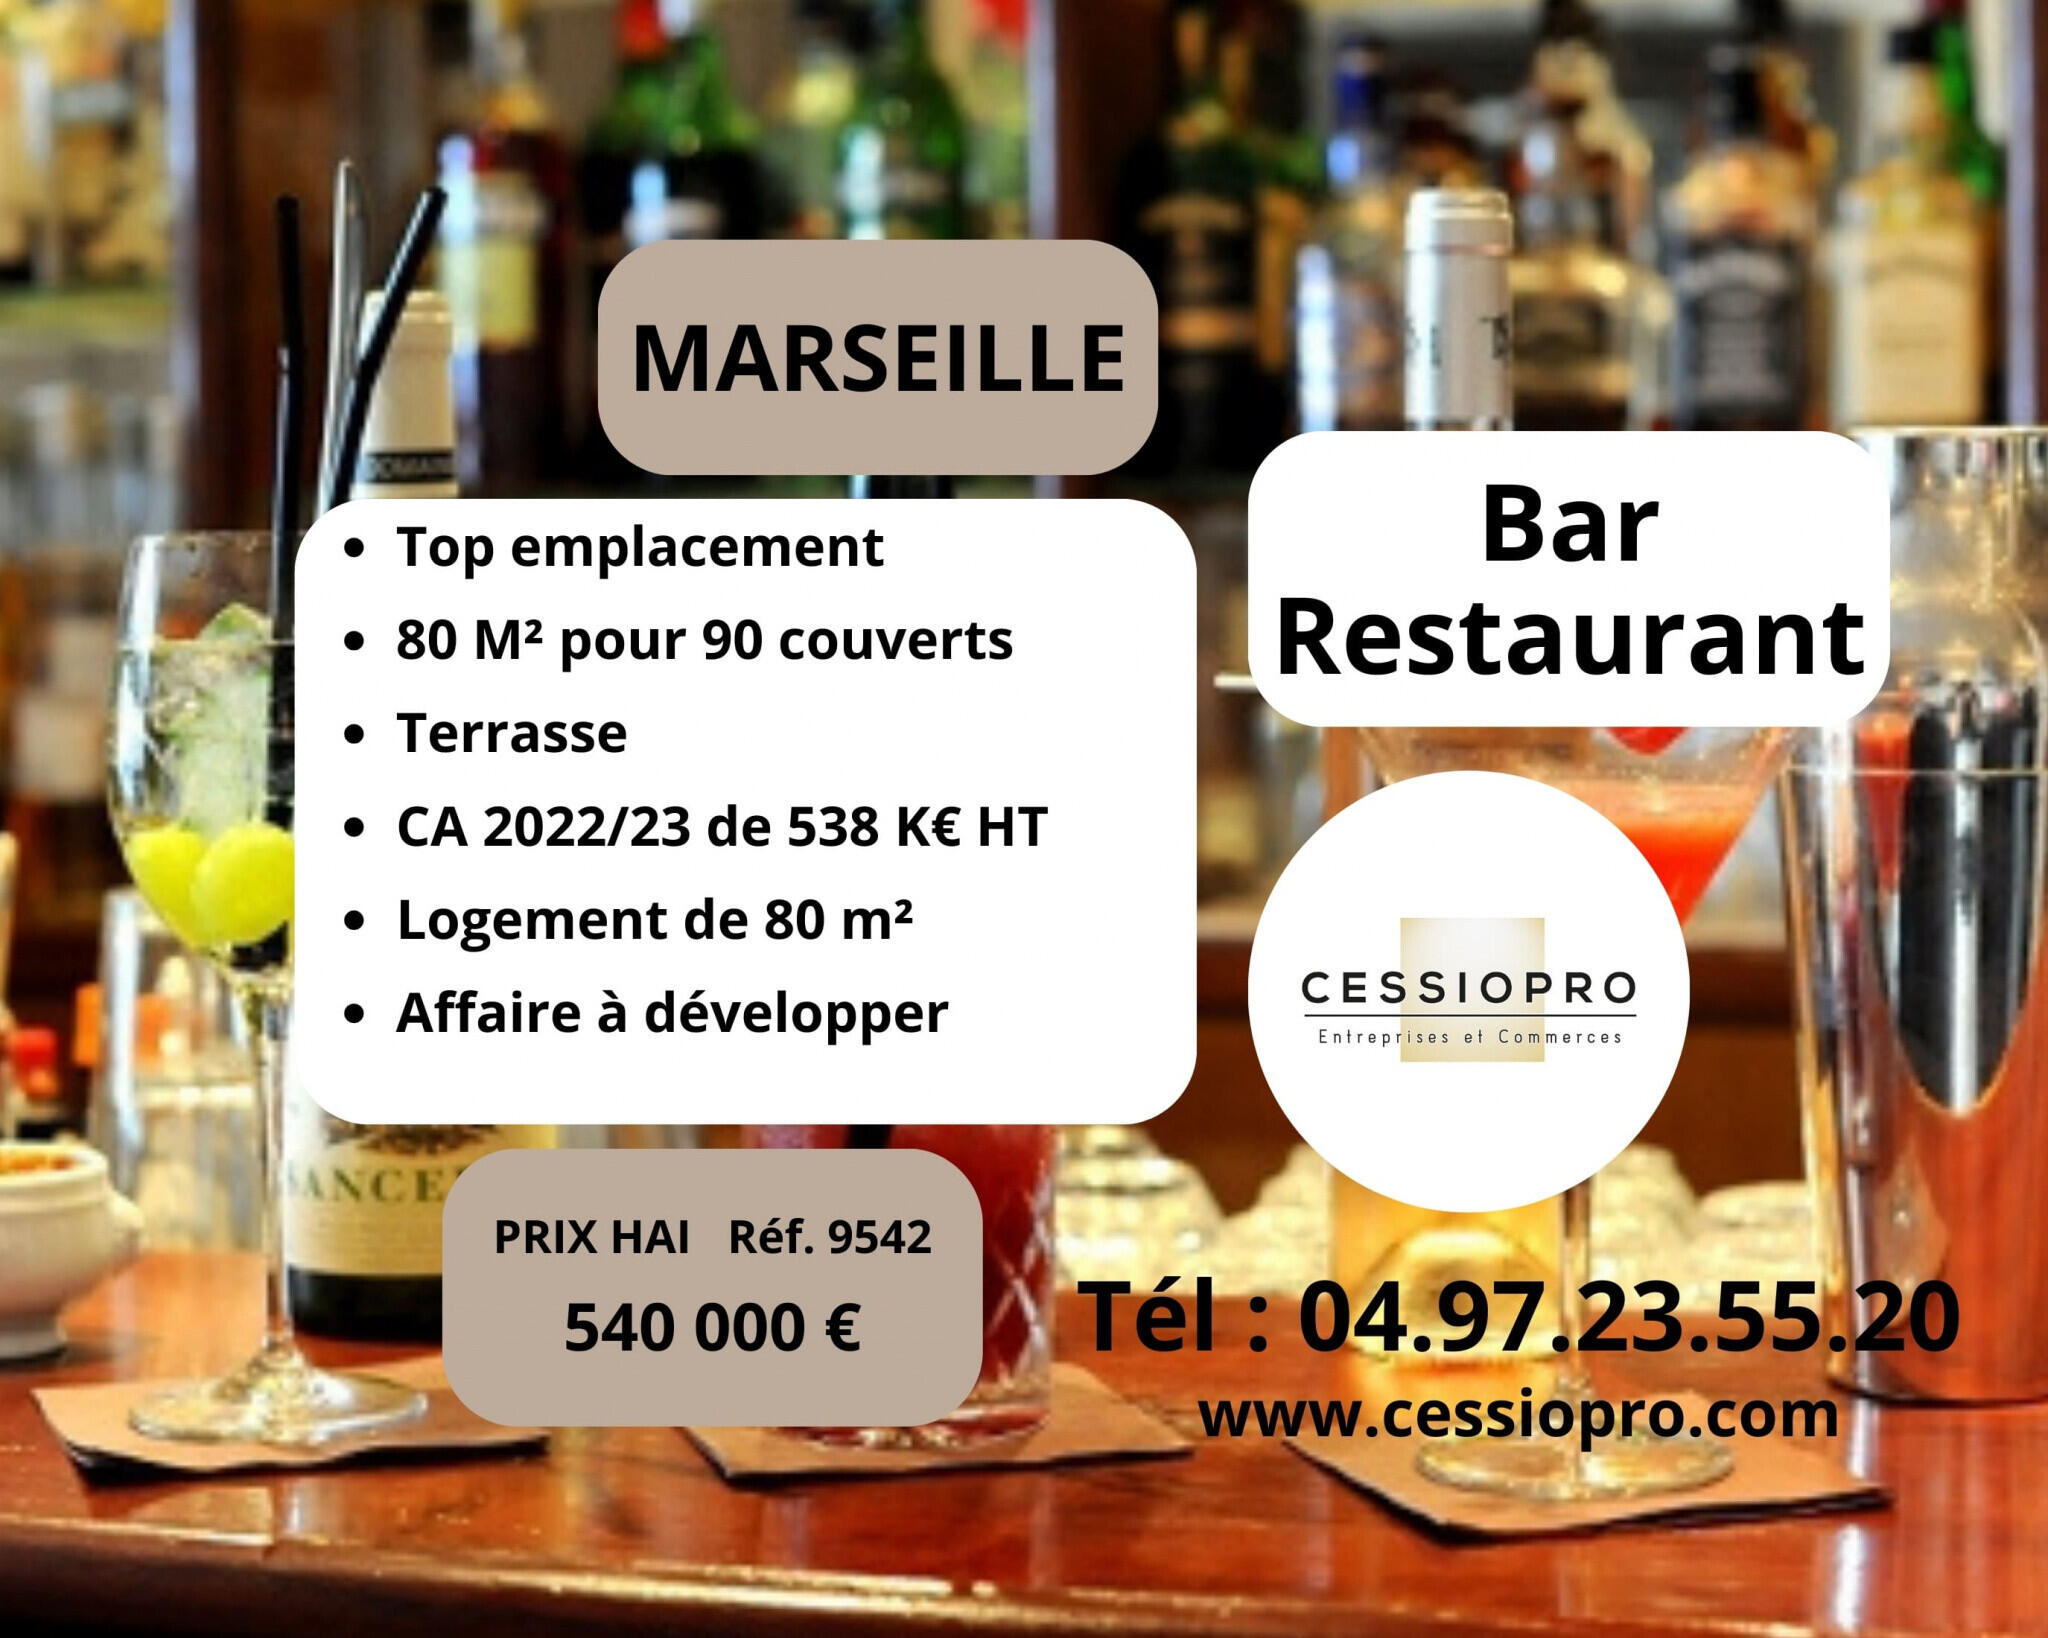 Vente très belle affaire bar restaurant Marseille